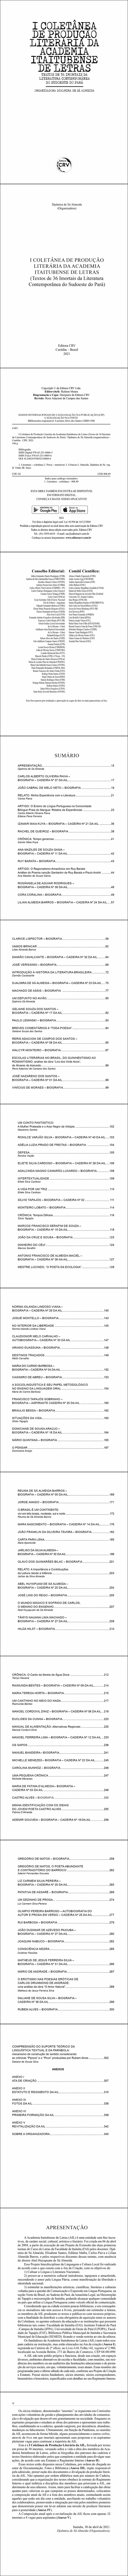 I COLETÂNEA DE PRODUÇÃO LITERÁRIA DA ACADEMIA ITAITUBENSE DE LETRAS <br>(Textos de 36 Imortais da Literatura Contemporânea do Sudoeste do Pará)